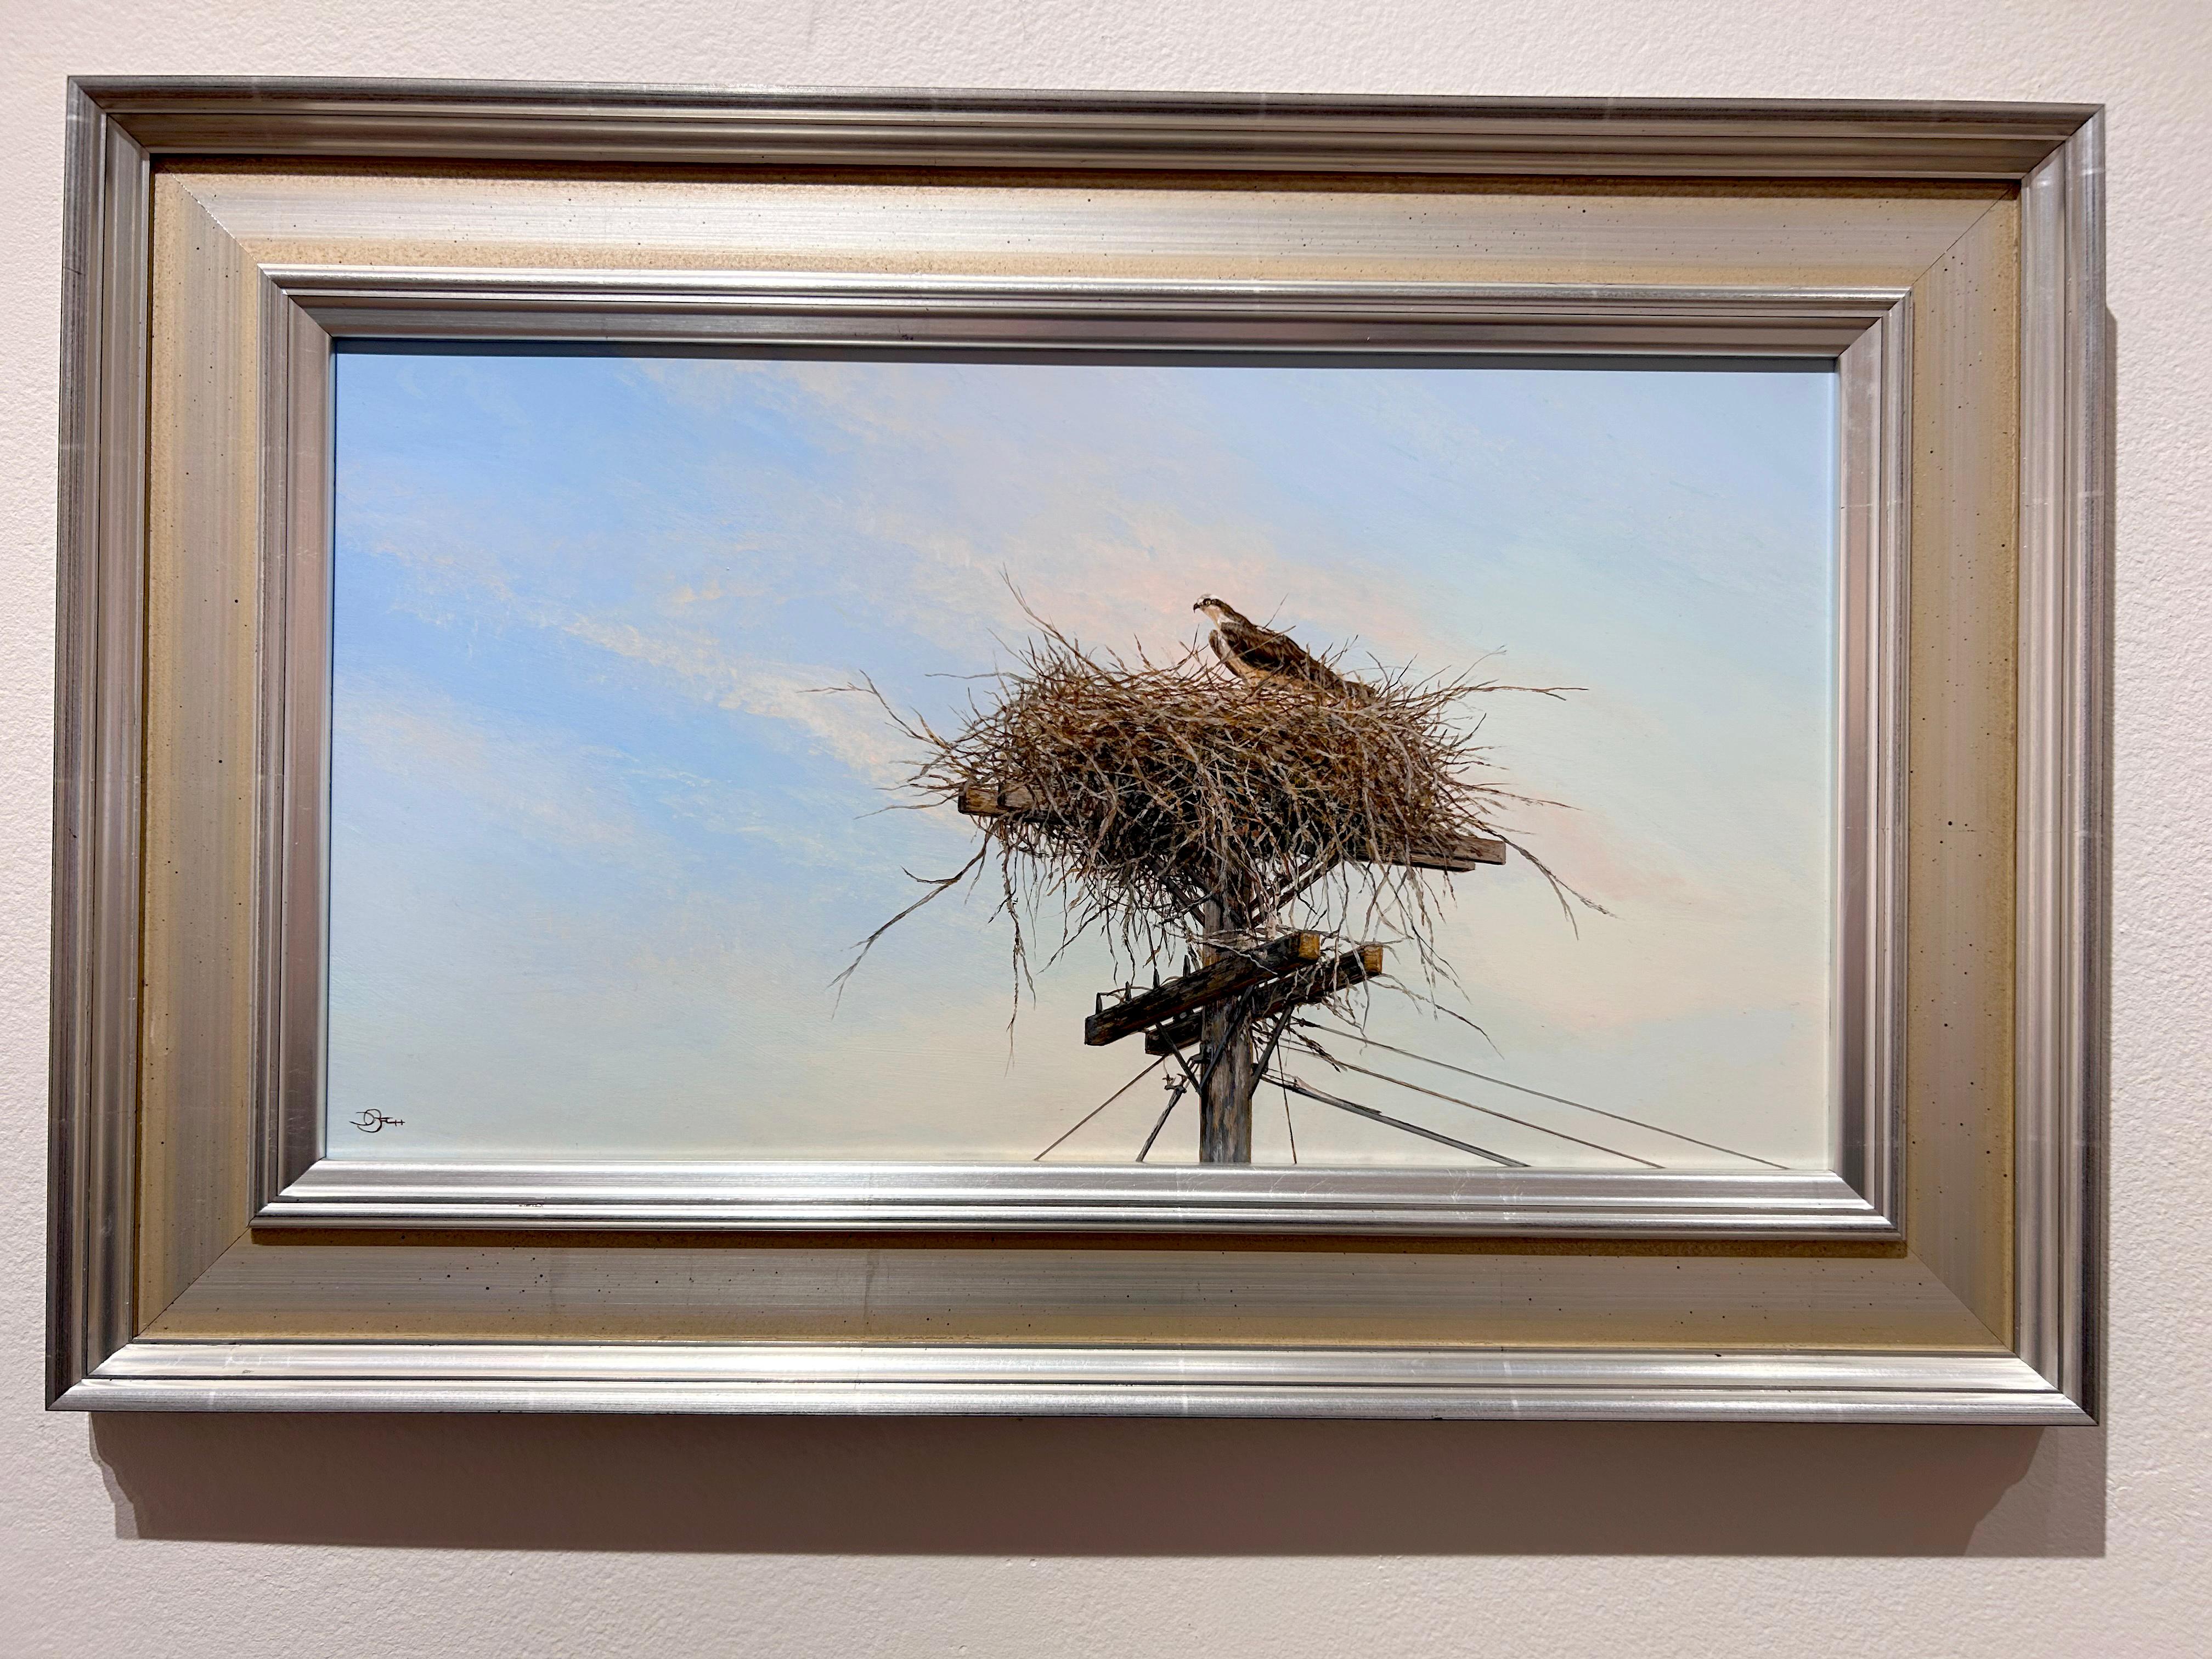 Bach, „Eine kleine Hilfe von meinen Freunden“, realistische Osprey-Landschaft mit Vogelaufsatz  – Painting von Del Bourree Bach